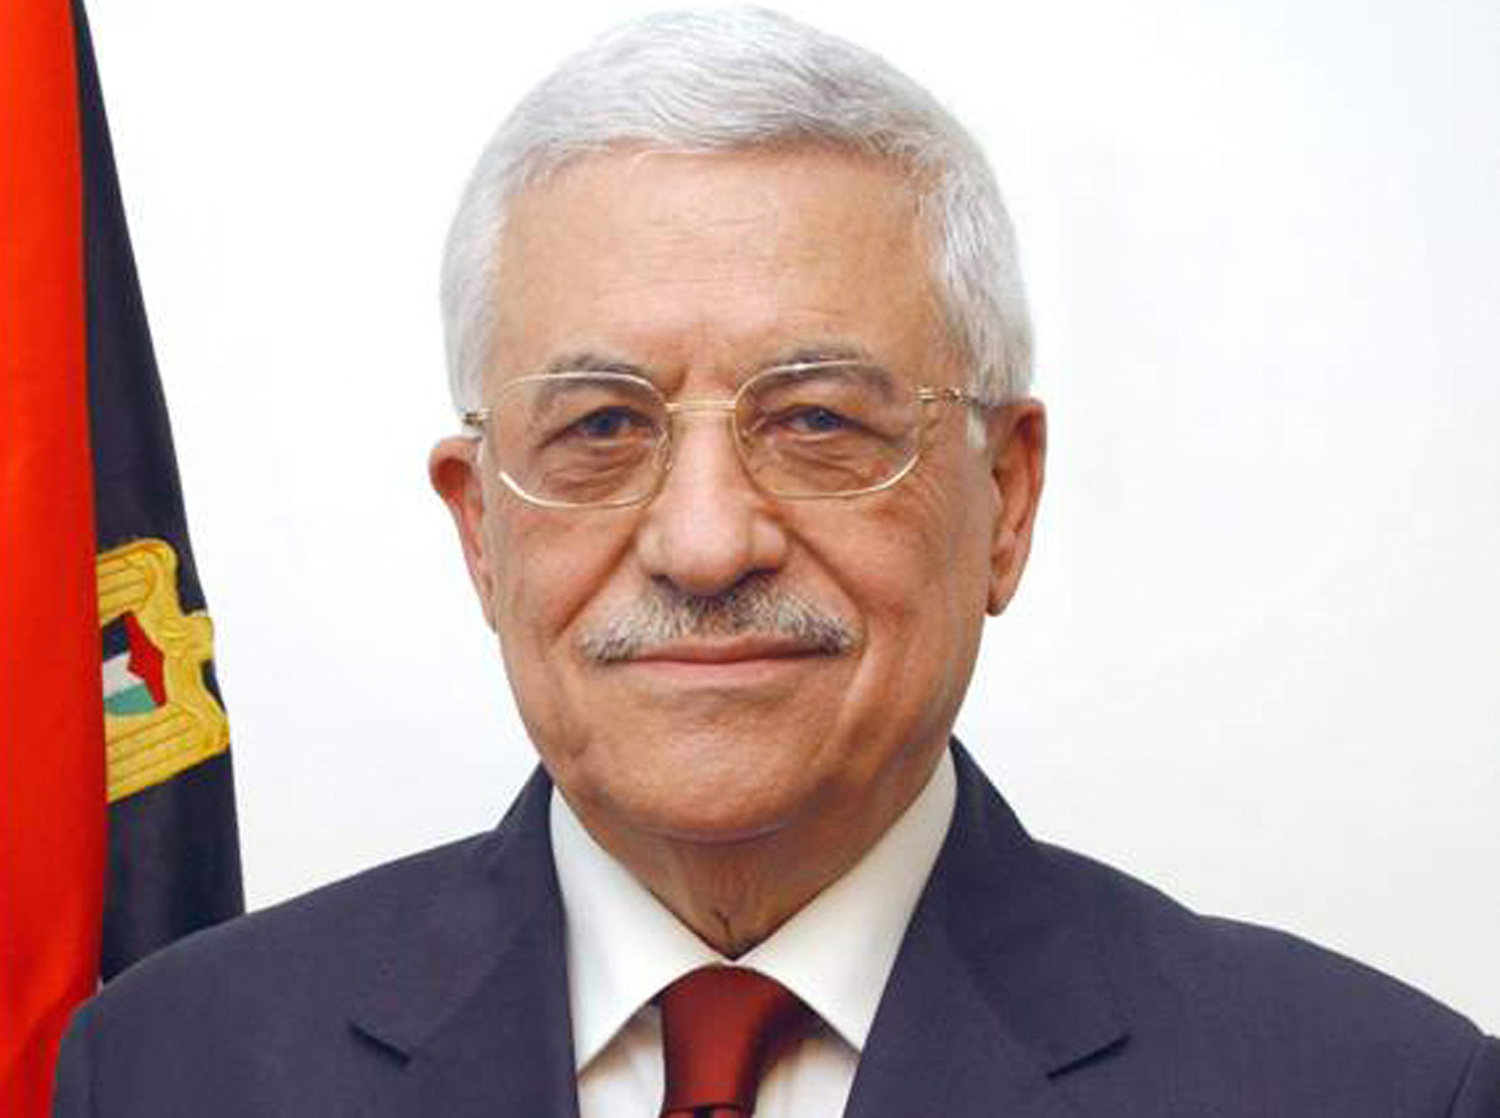 الرئيس يتسلّم دعوة من العاهل الأردني لحضور القمة العربية